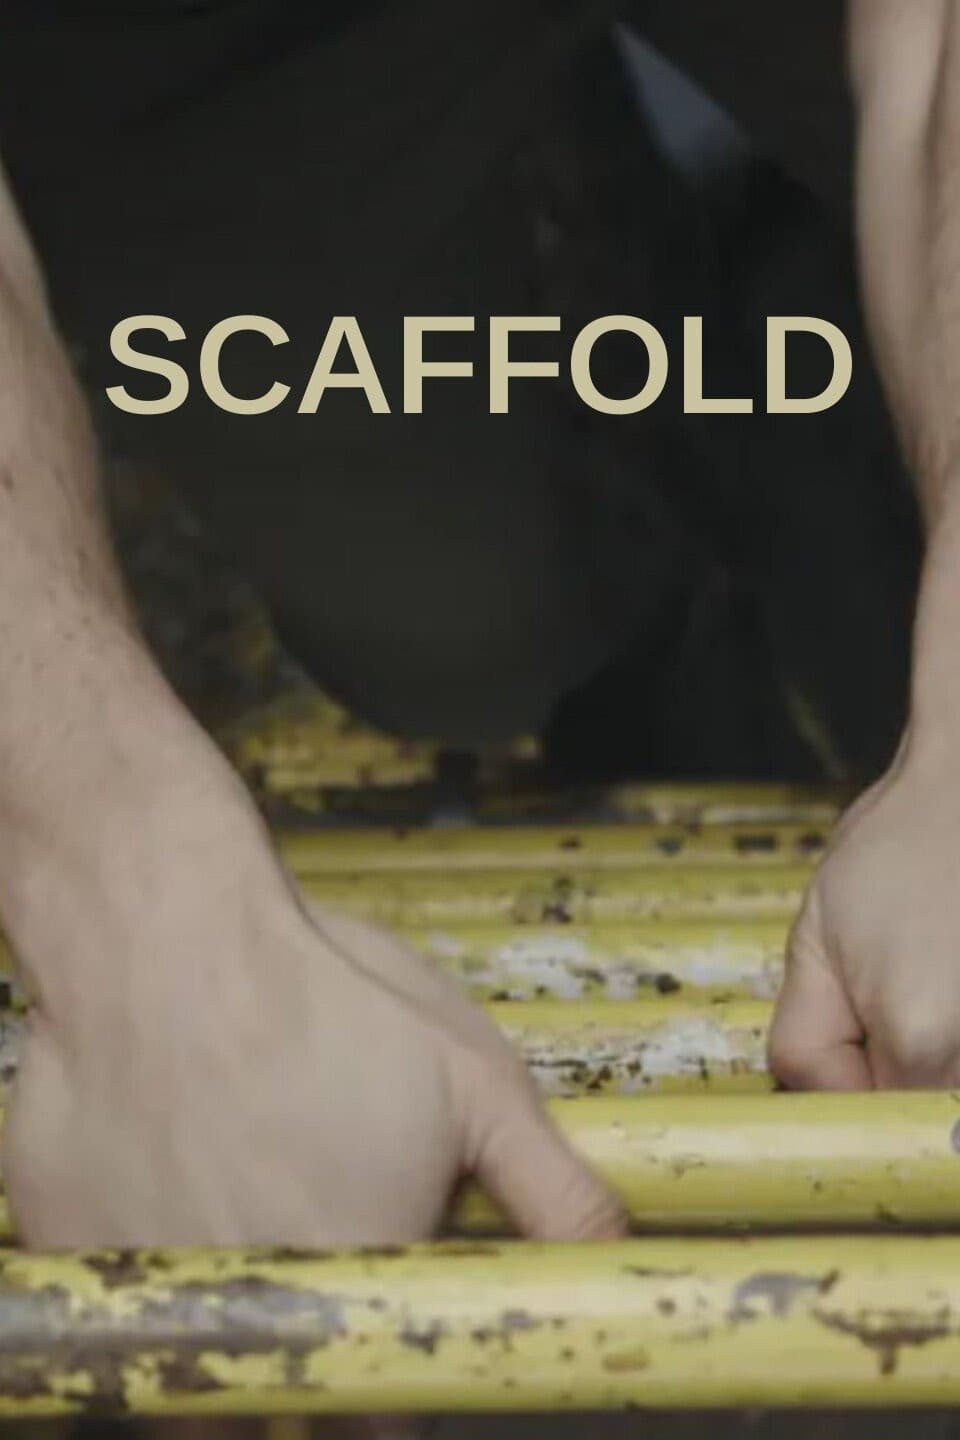 Scaffold